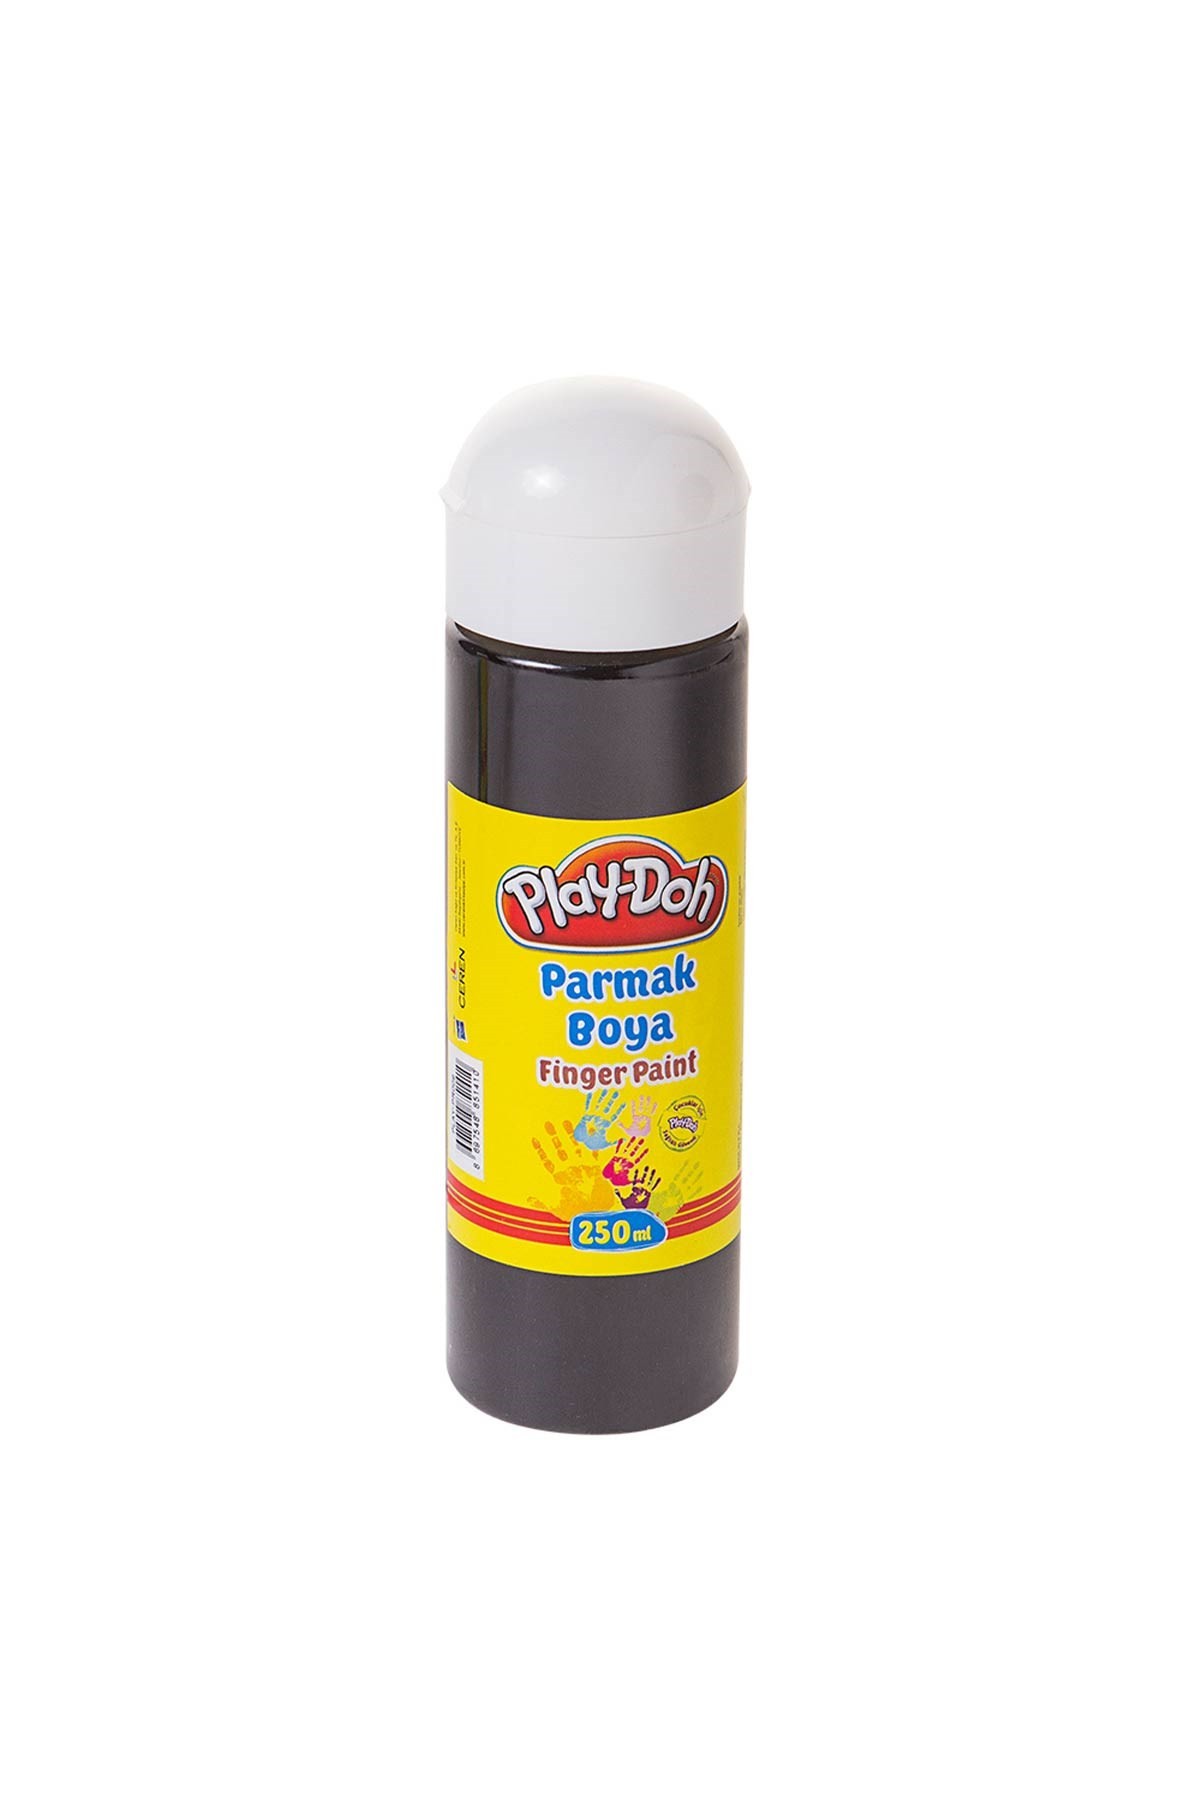 Play-Doh Parmak Boyası Siyah 250 ml